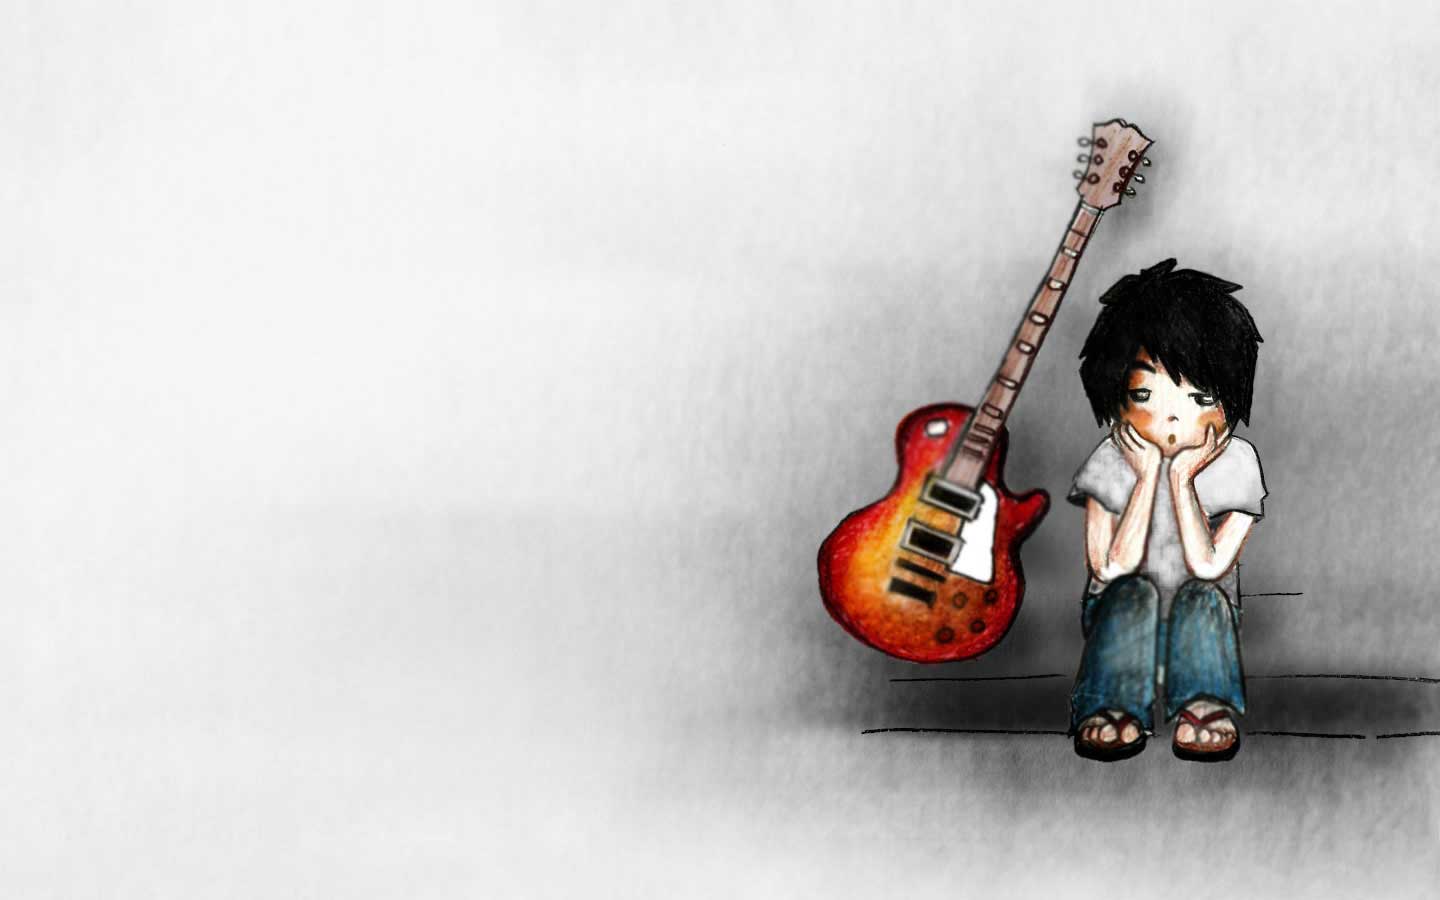 cartoon boy wallpaper,string instrument,musical instrument,guitarist,guitar,plucked string instruments